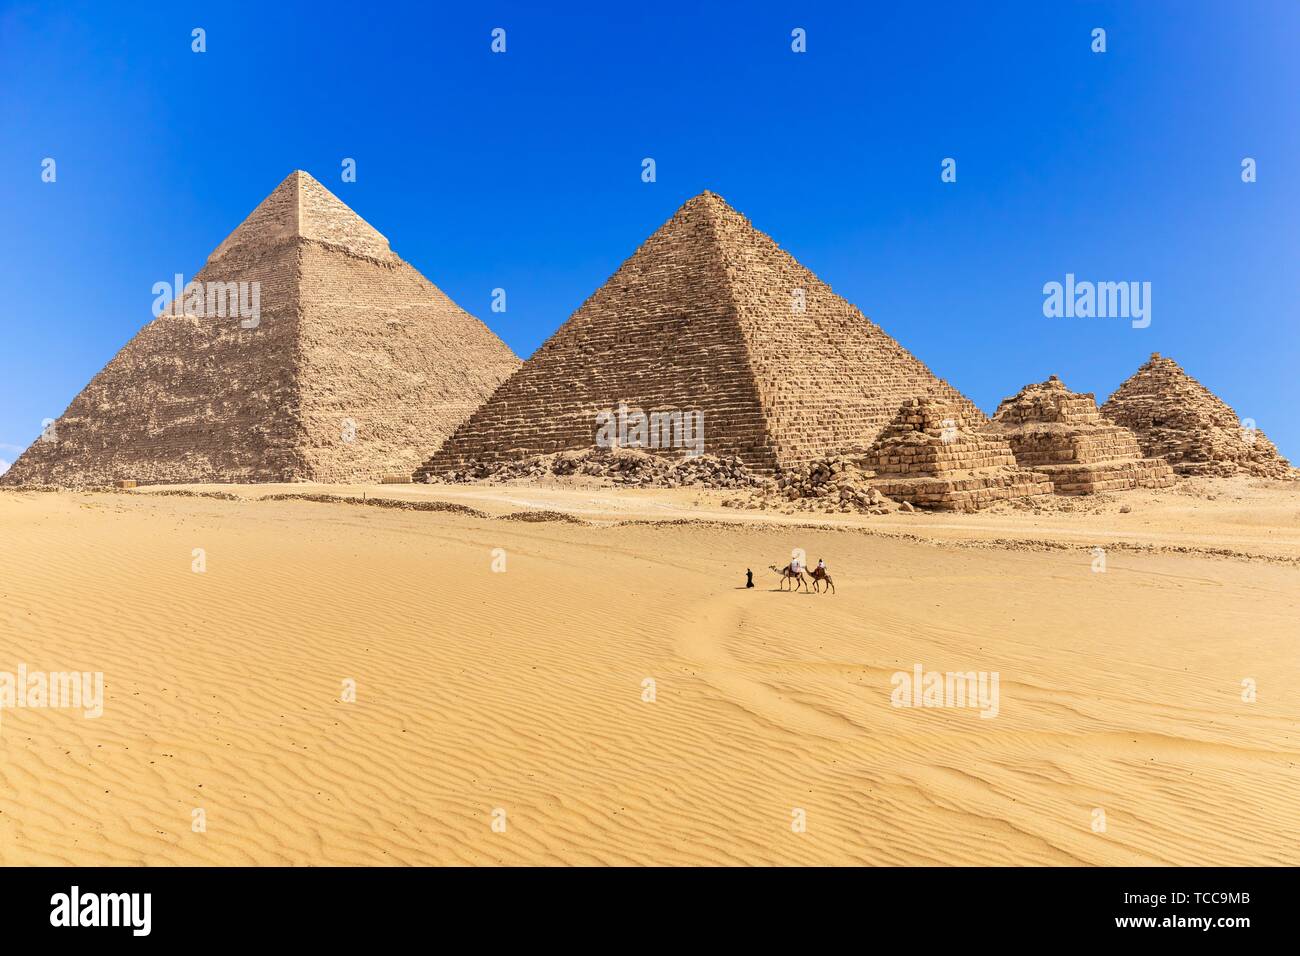 Las pirámides de Giza en el desierto de Egipto. Foto de stock